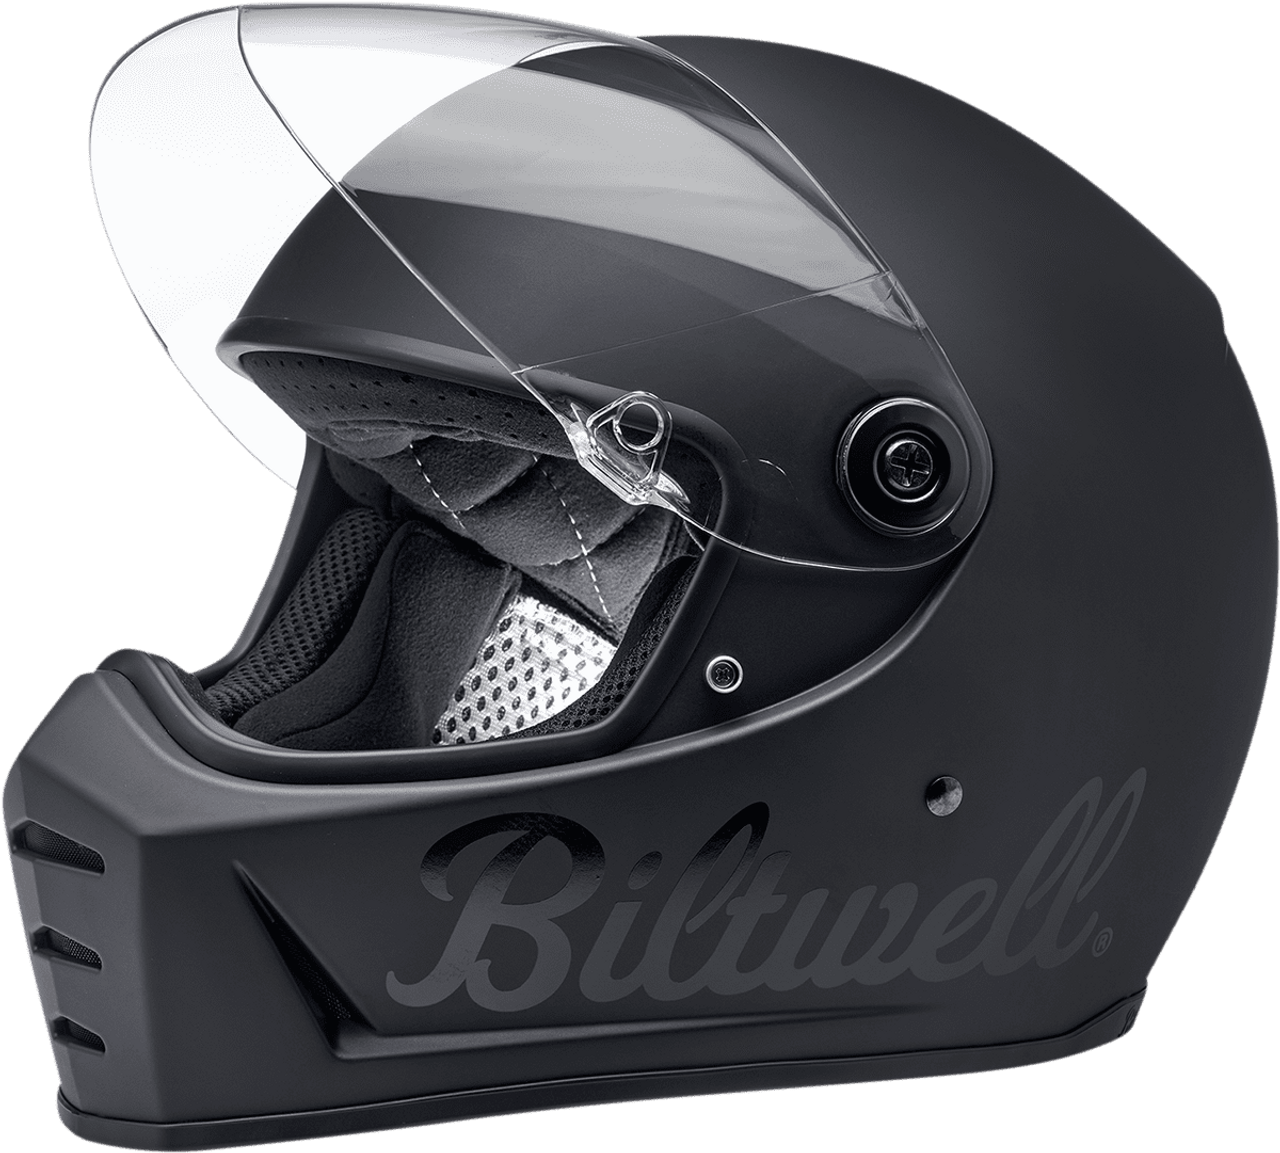 Biltwell Lane Splitter Factory Helmet